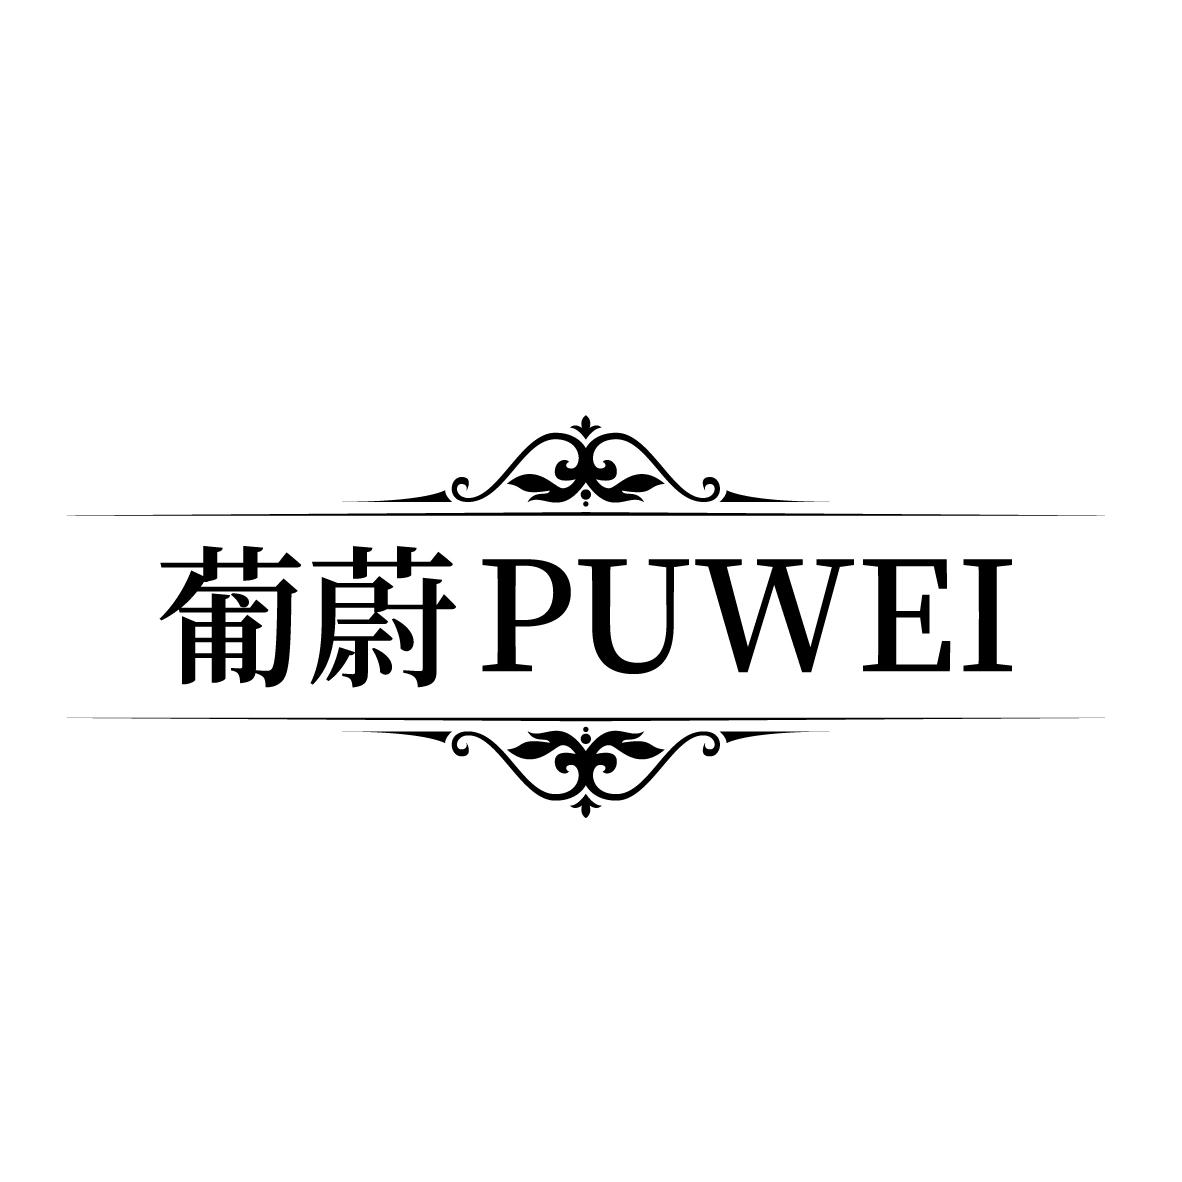 葡蔚
PUWEI草莓商标转让费用买卖交易流程